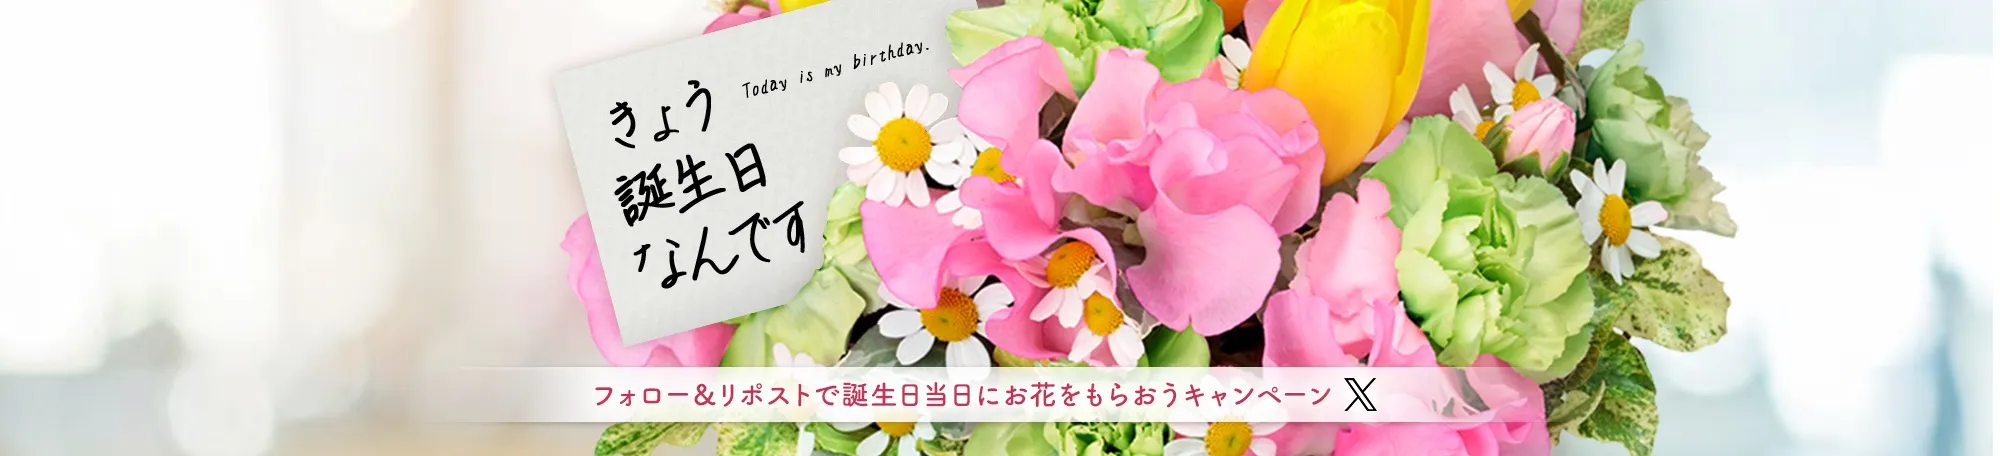 フォロー＆RTで誕生日当日に花束をもらおうキャンペーン